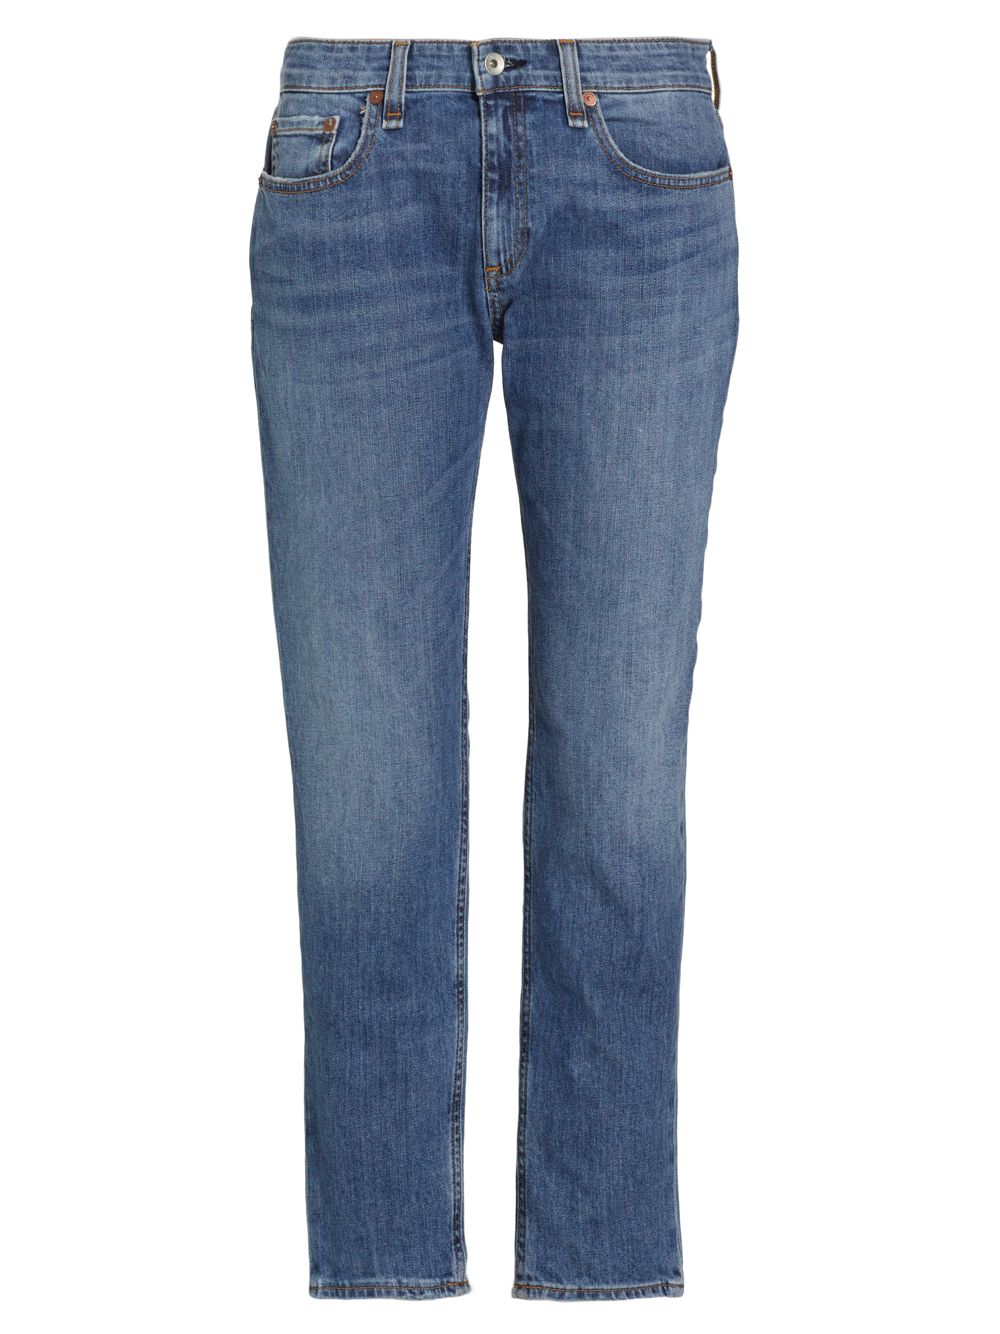 Узкие джинсы-бойфренды Dre с низкой посадкой rag & bone джинсы узкие с низкой посадкой 30 30 синий